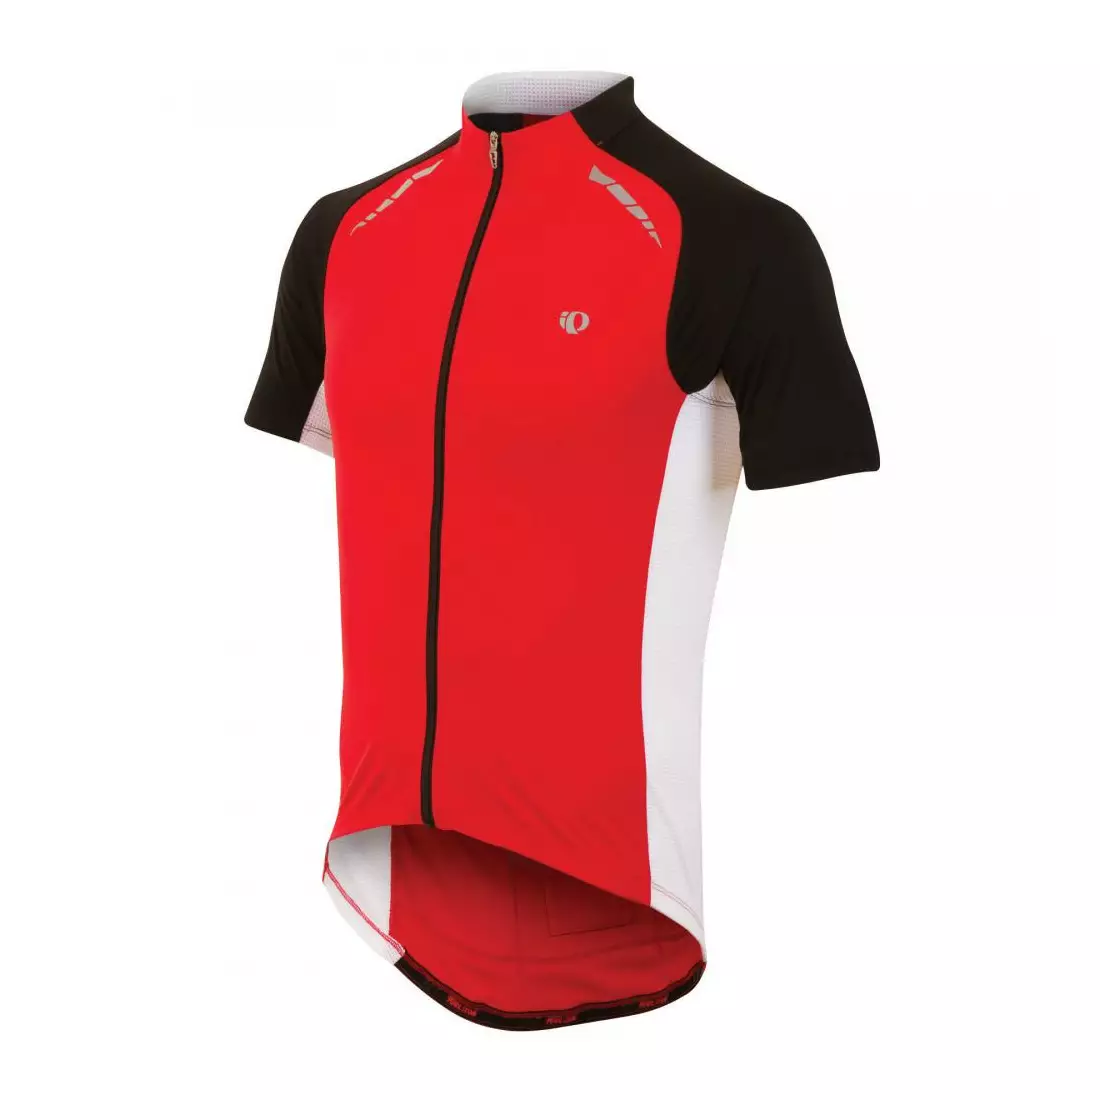 PEARL IZUMI - 11121311-3DJ ELITE PURSUIT - lehký cyklistický dres, barva: červená